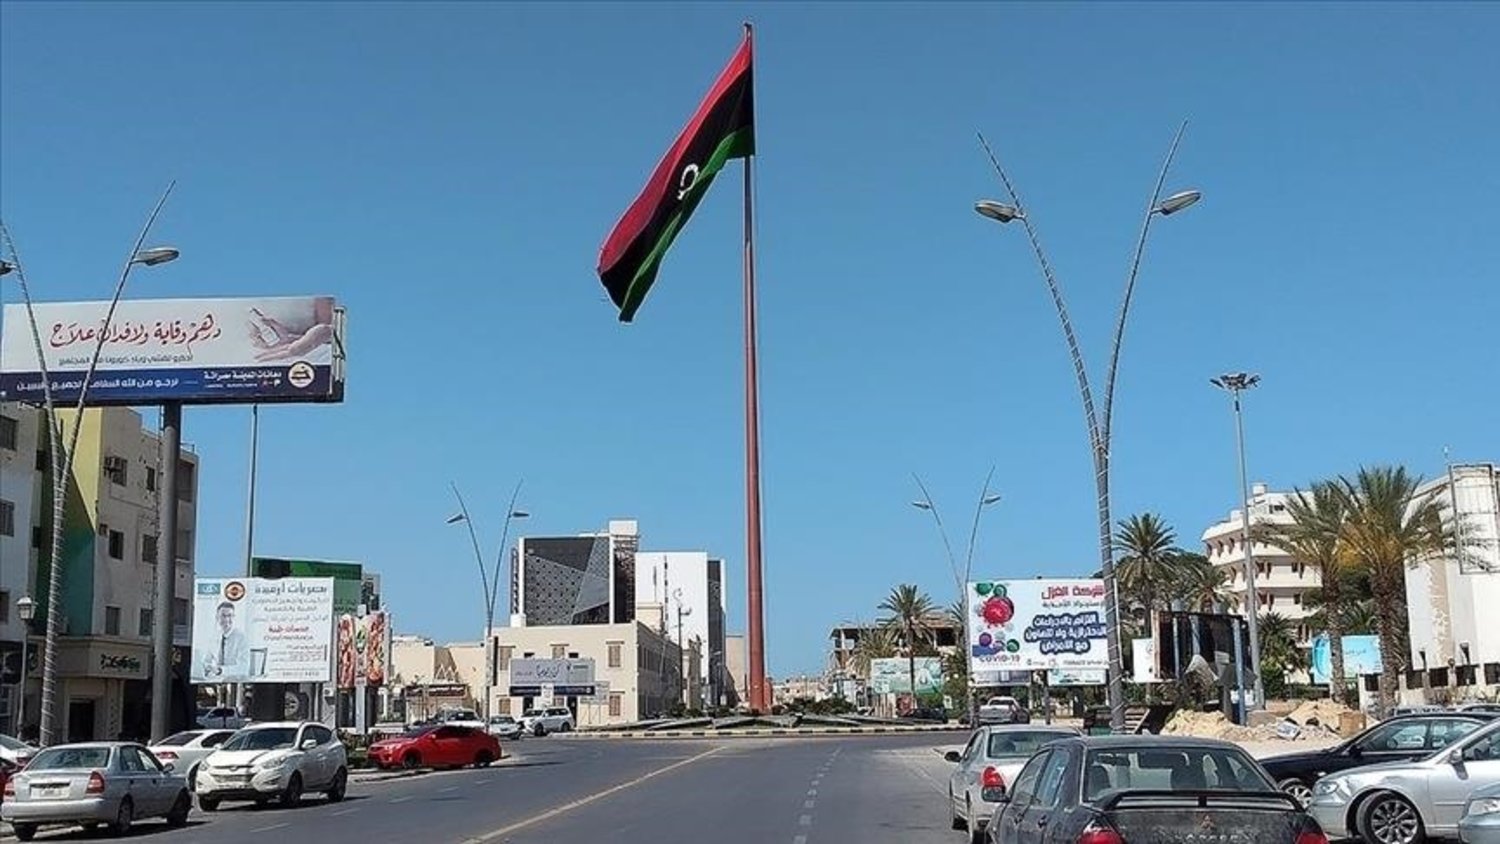 ABD, Libya'daki Rus varlığını sonlandırmak istiyor (AA)